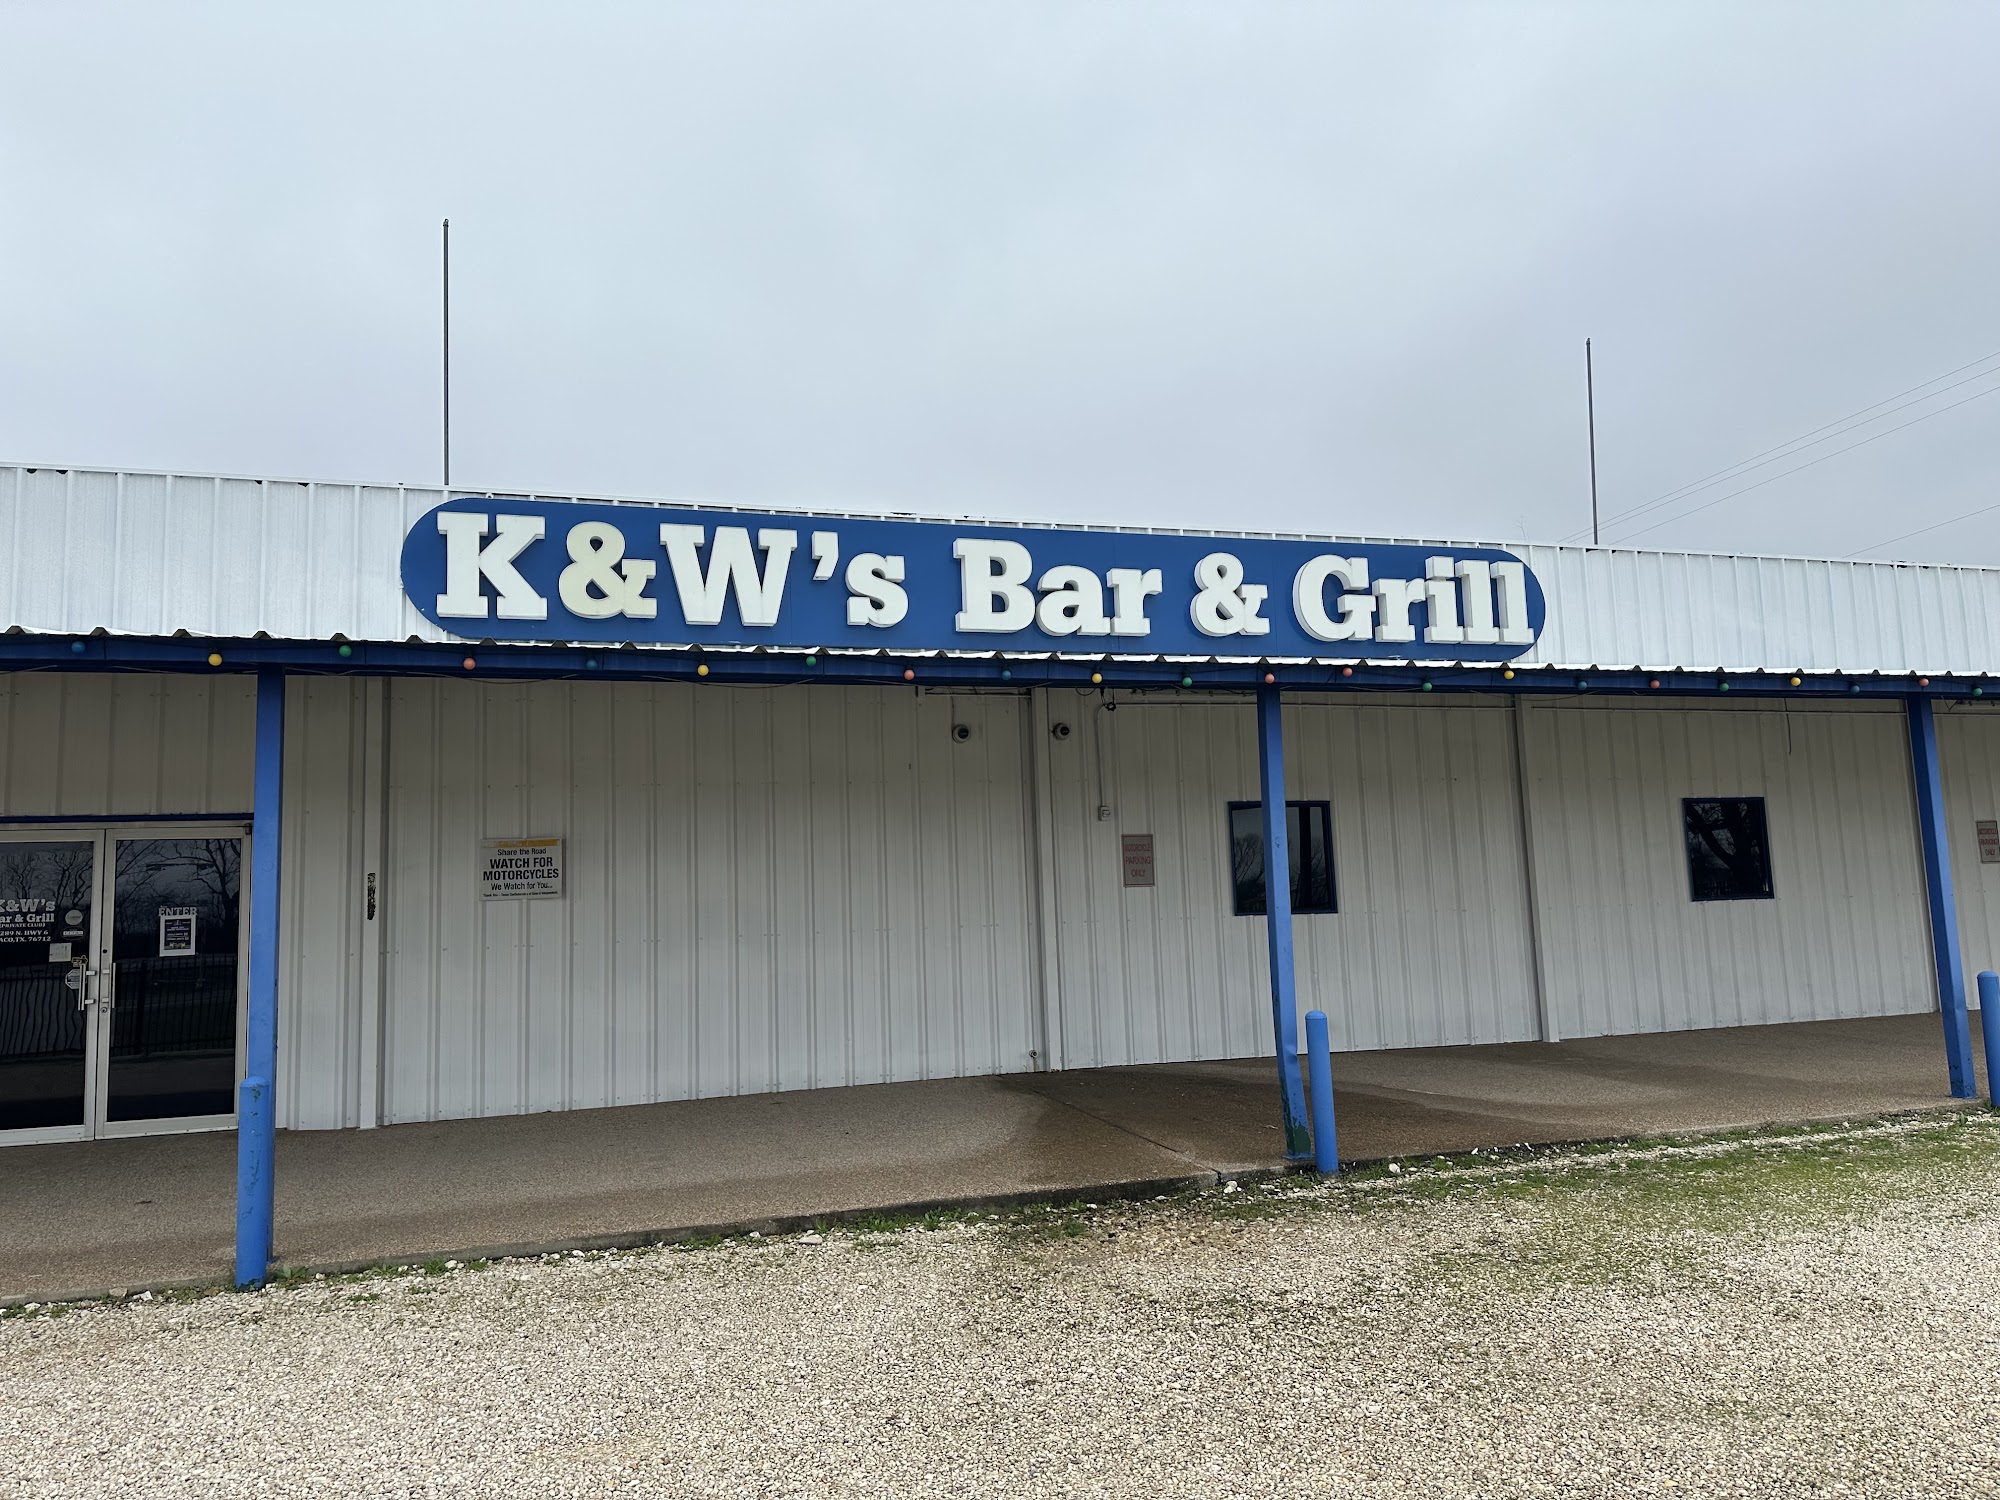 K & W's Bar & Grill